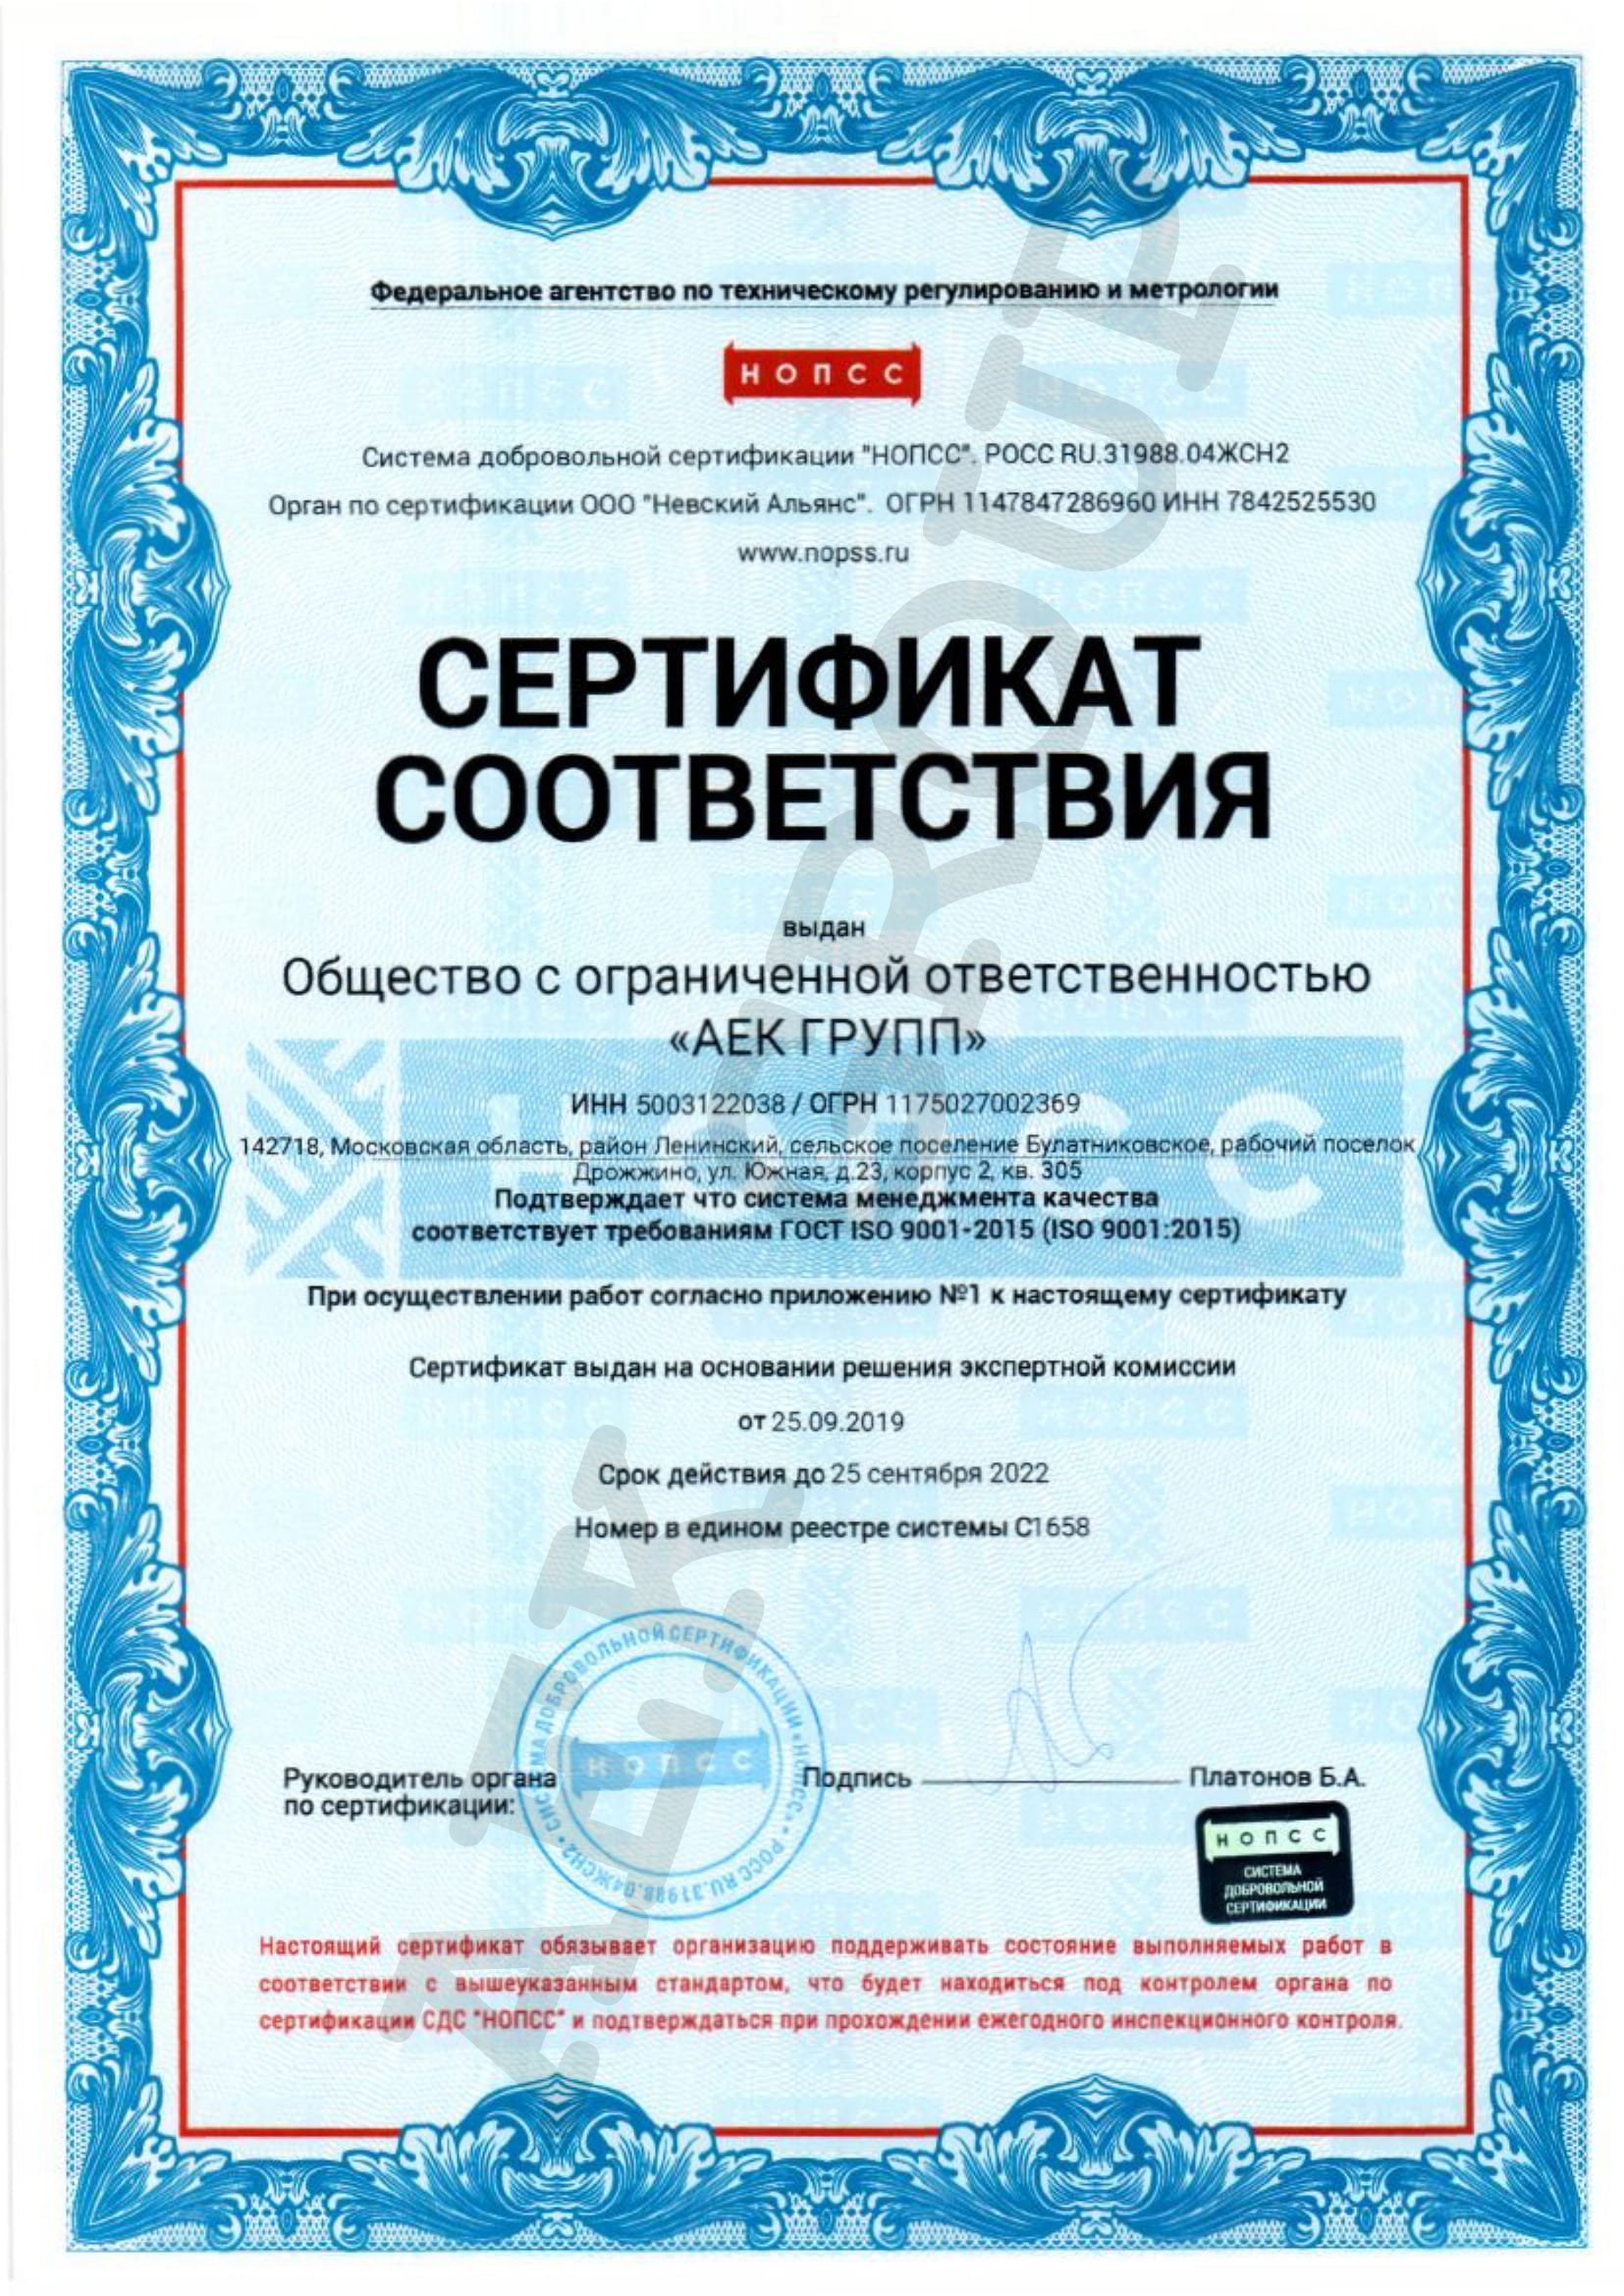 Сертификат соответствия ООО "АЕК ГРУПП"